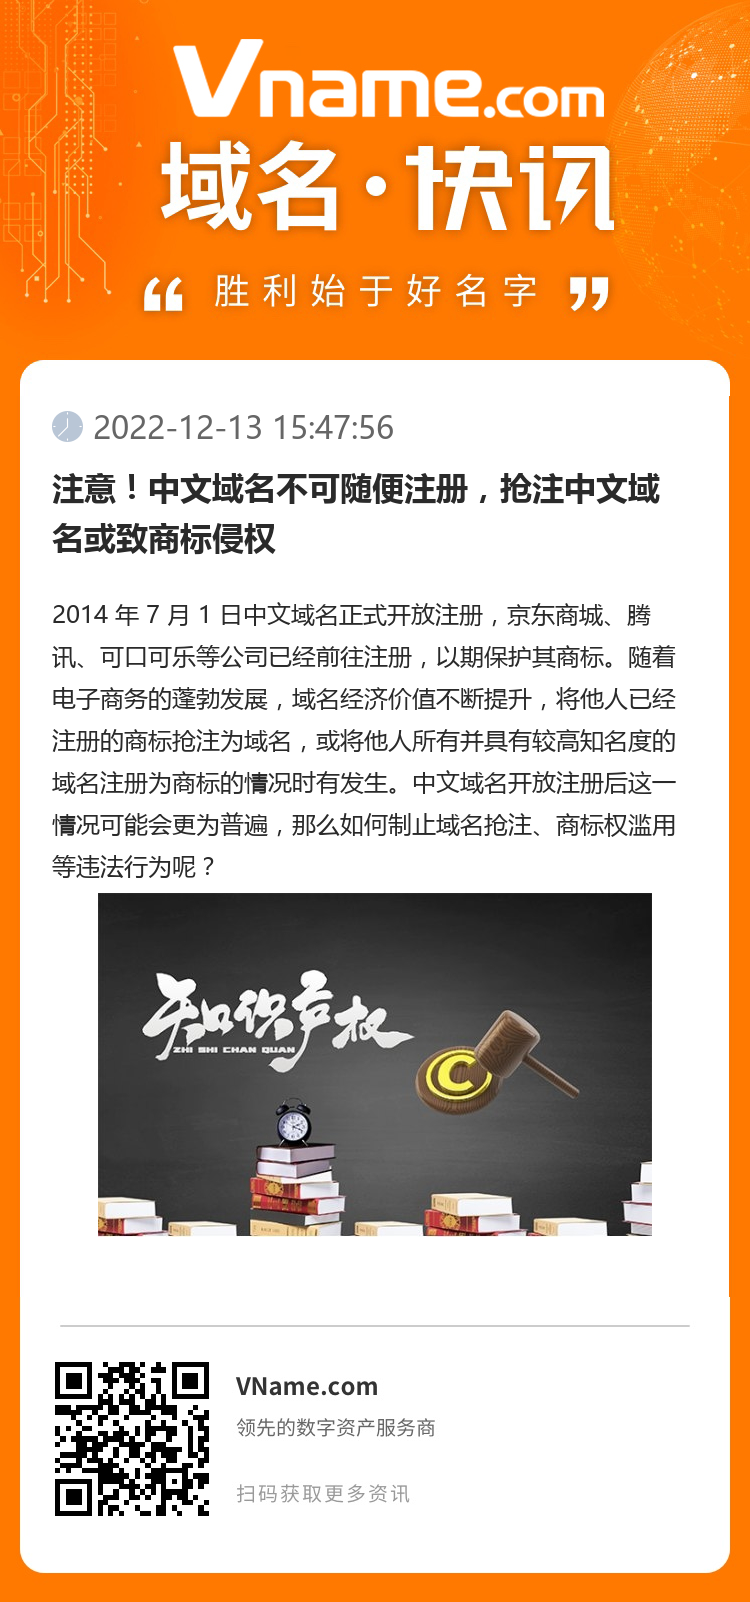 注意！中文域名不可随便注册，抢注中文域名或致商标侵权